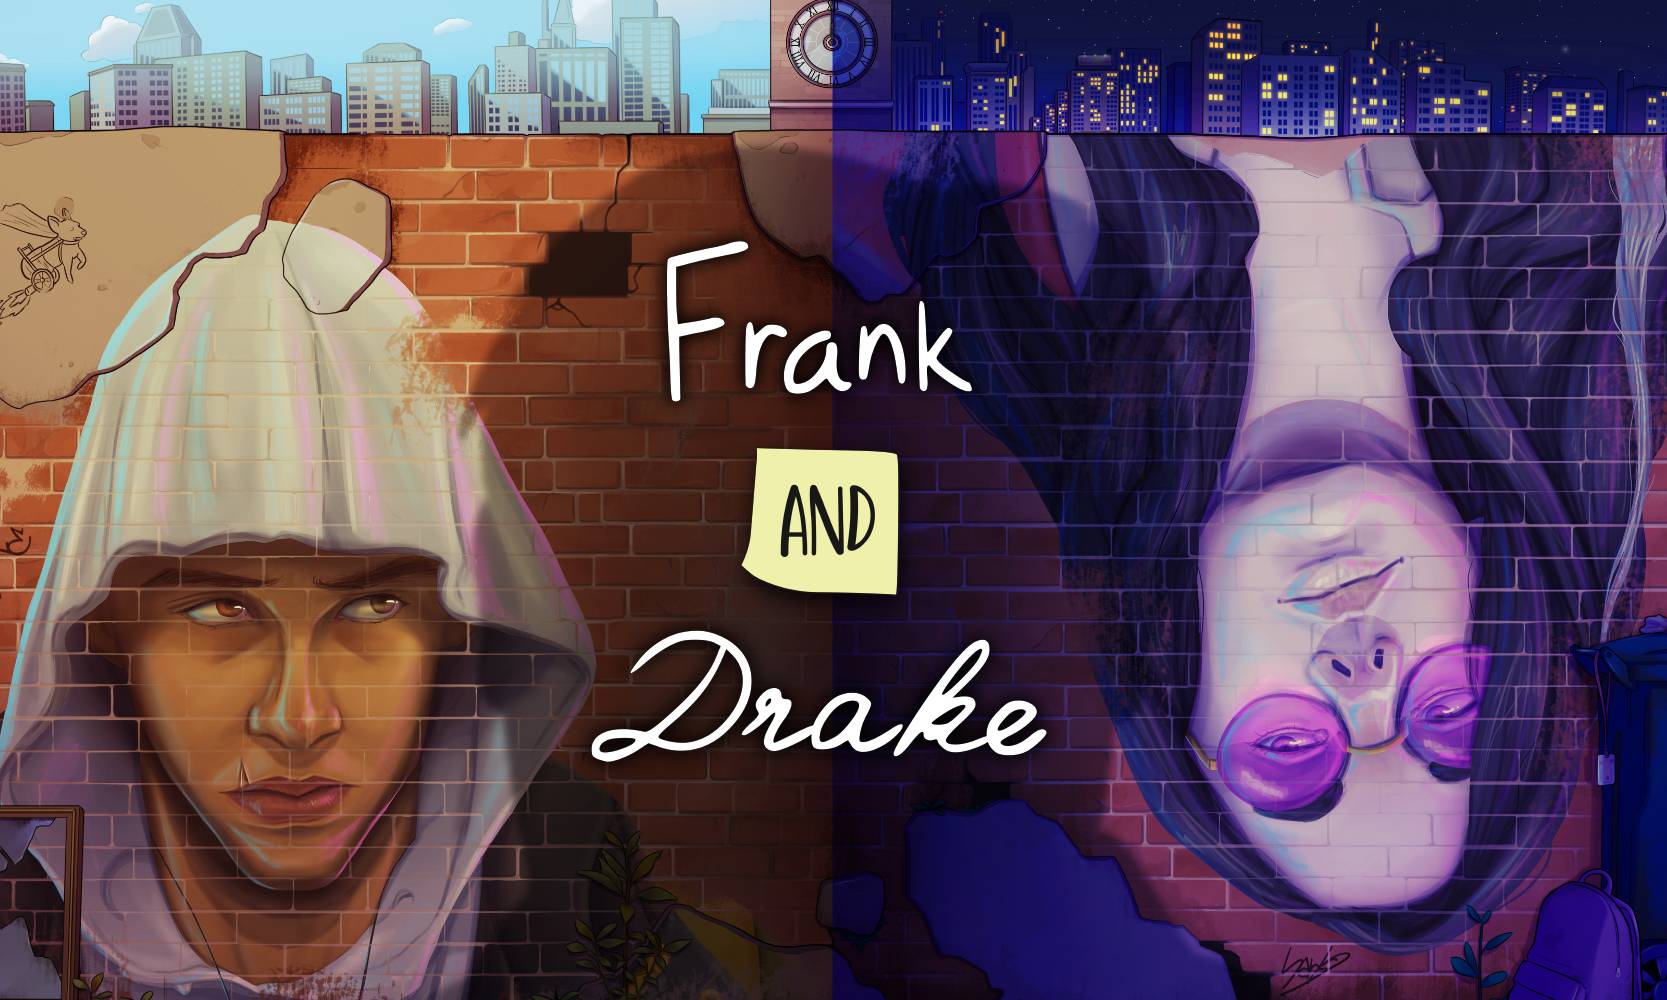 Frank and Drake: egy nem mindennapi barátság története - Teszt